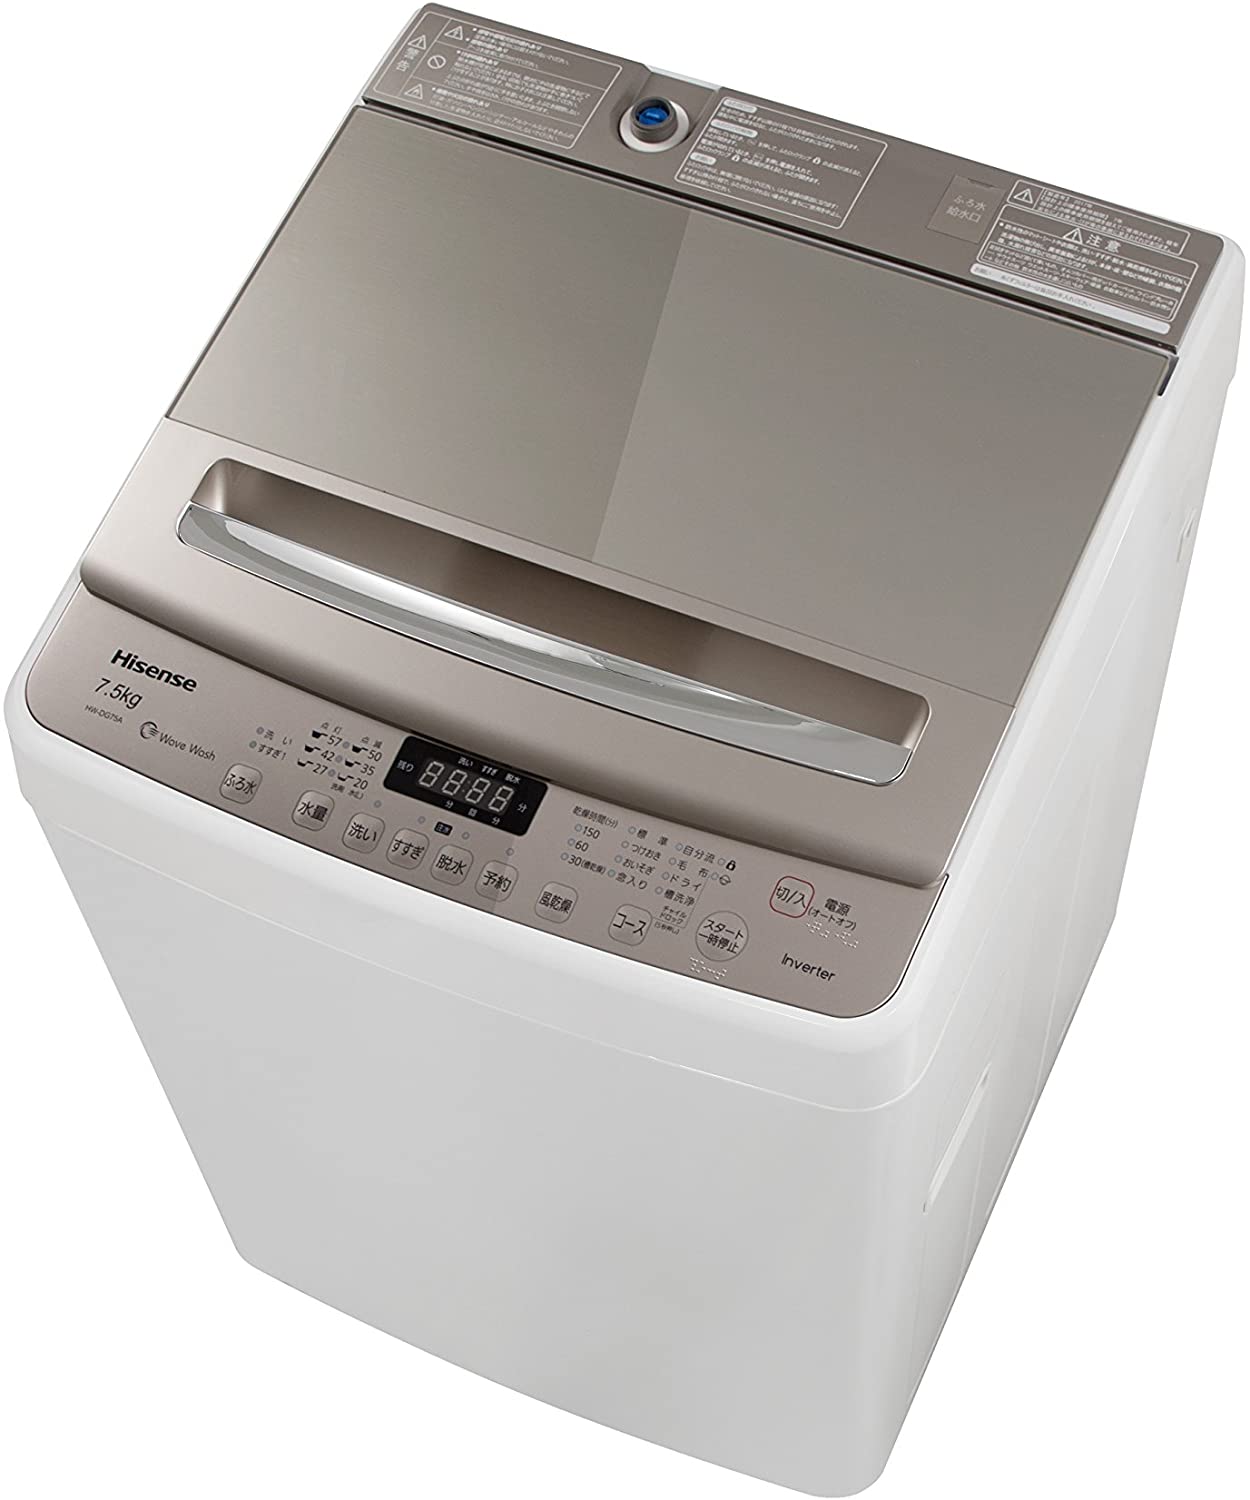 縦型洗濯機：洗浄力が高いが衣類の傷みは起こりやすい